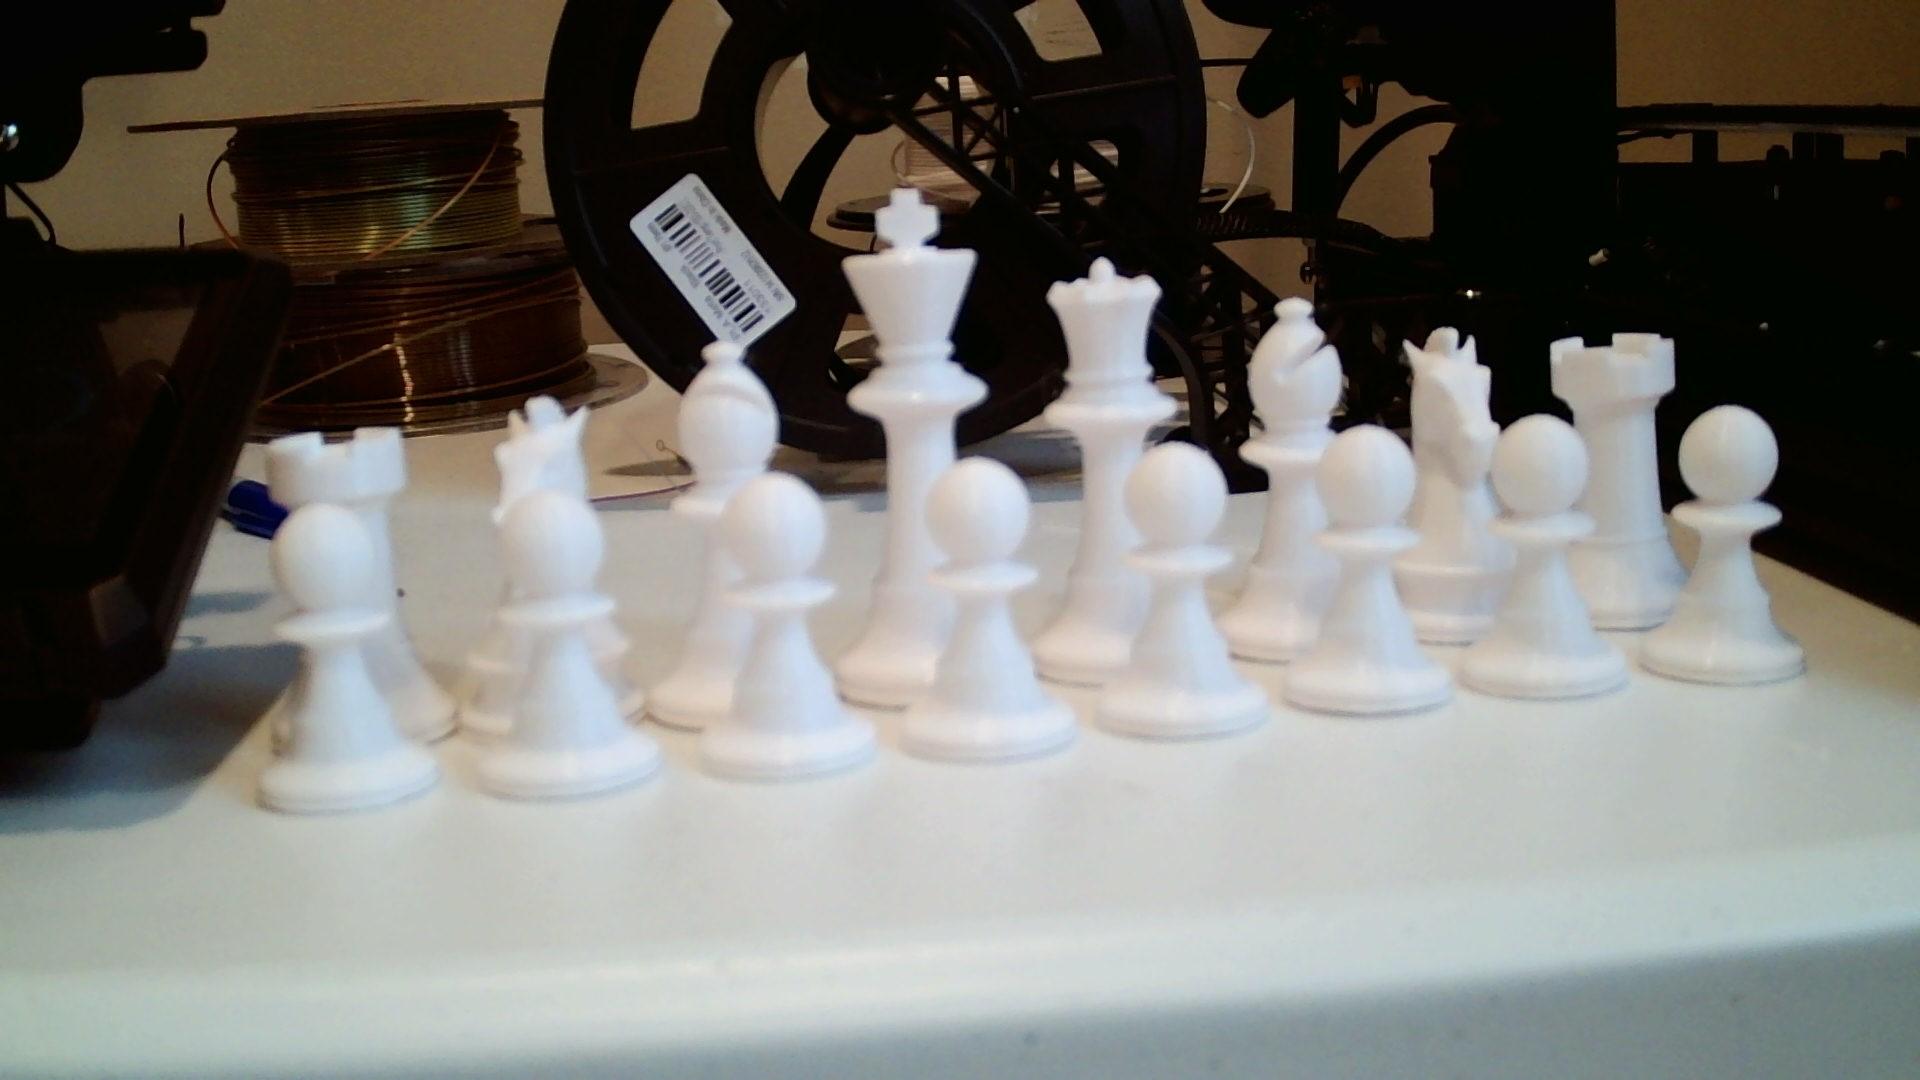 chessbord 3d model